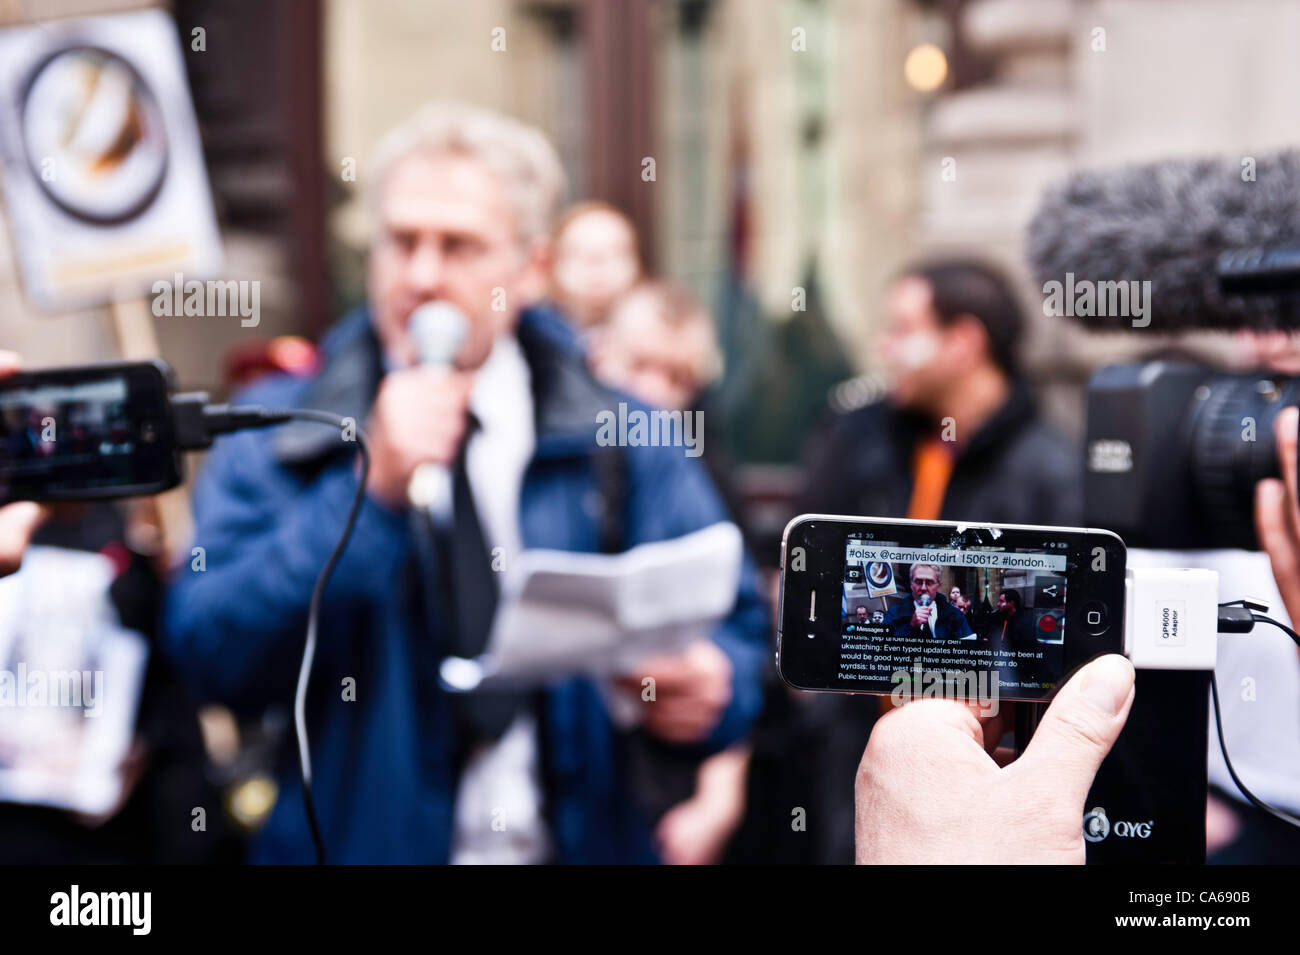 London, UK - 15. Juni 2012: ein Mann, die Dreharbeiten auf dem iPhone während der Karneval von Schmutz. Mehr als 30 Aktivisten-Gruppen aus London und auf der ganzen Welt haben sich zusammengeschlossen, um die angeblichen illegalen Taten von Bergbau und Gewinnung Unternehmen hervorzuheben. Stockfoto